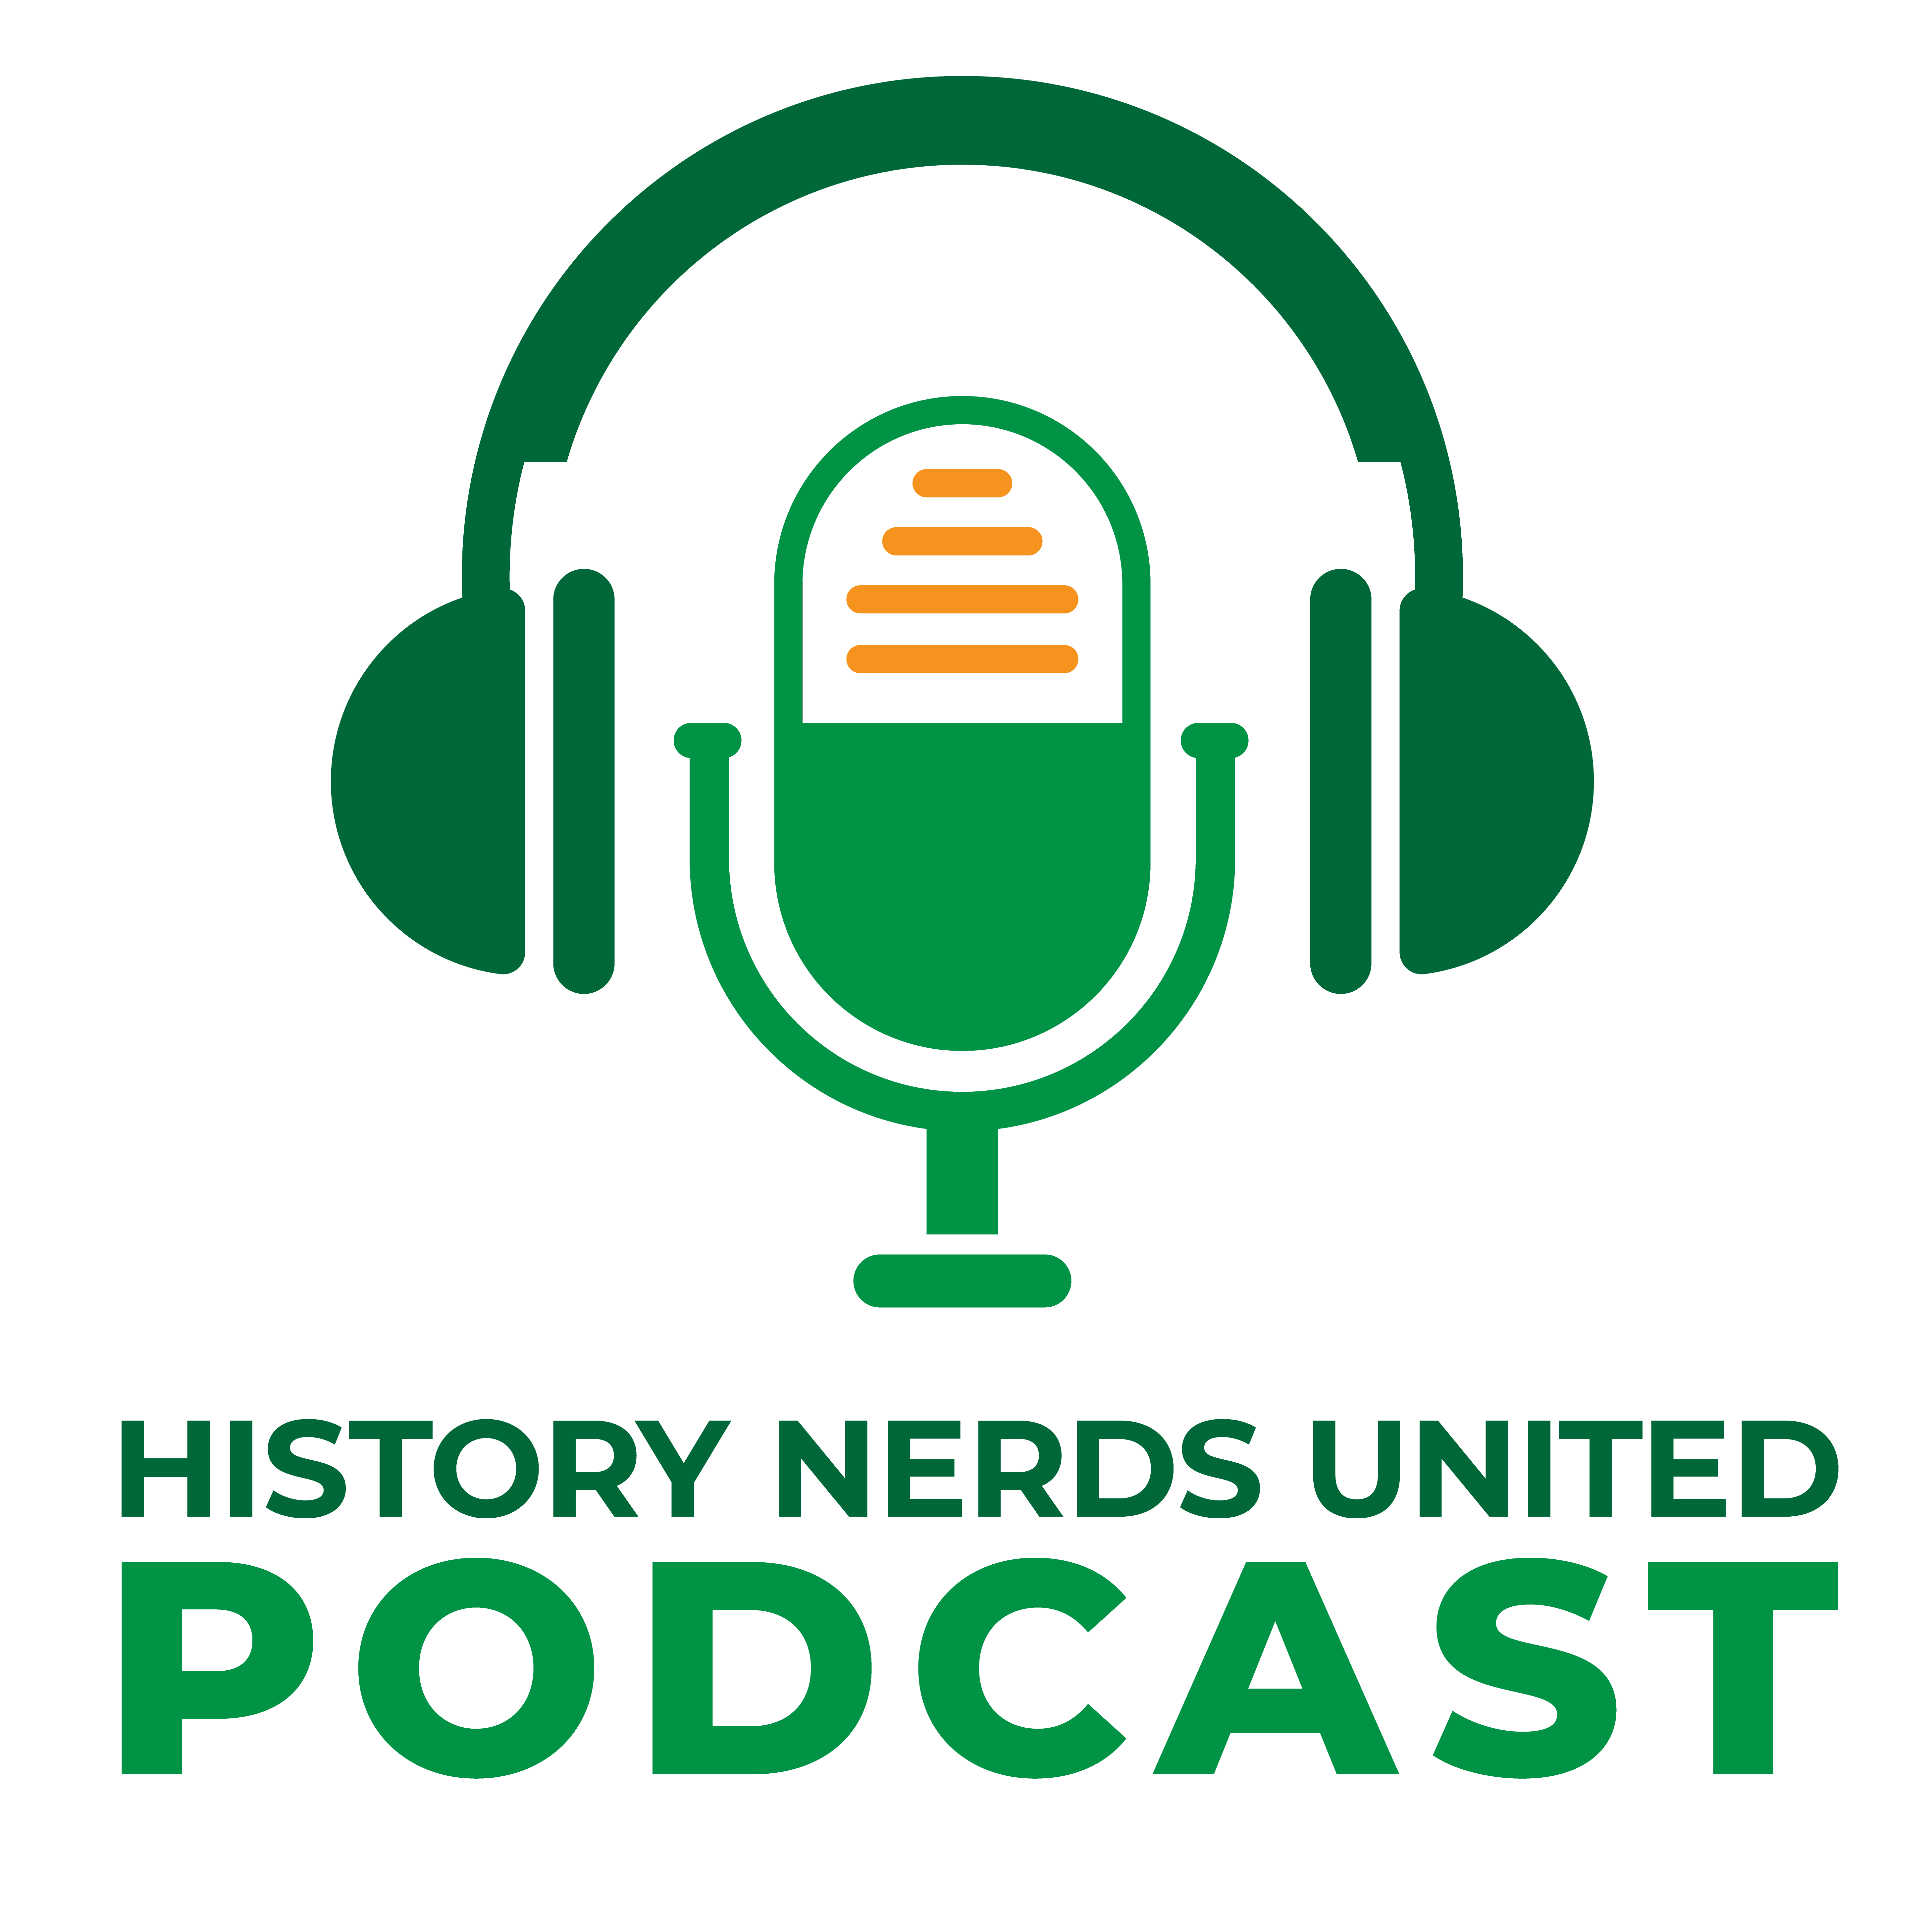 History Nerds United Podcast S1:E4 – James M. Scott